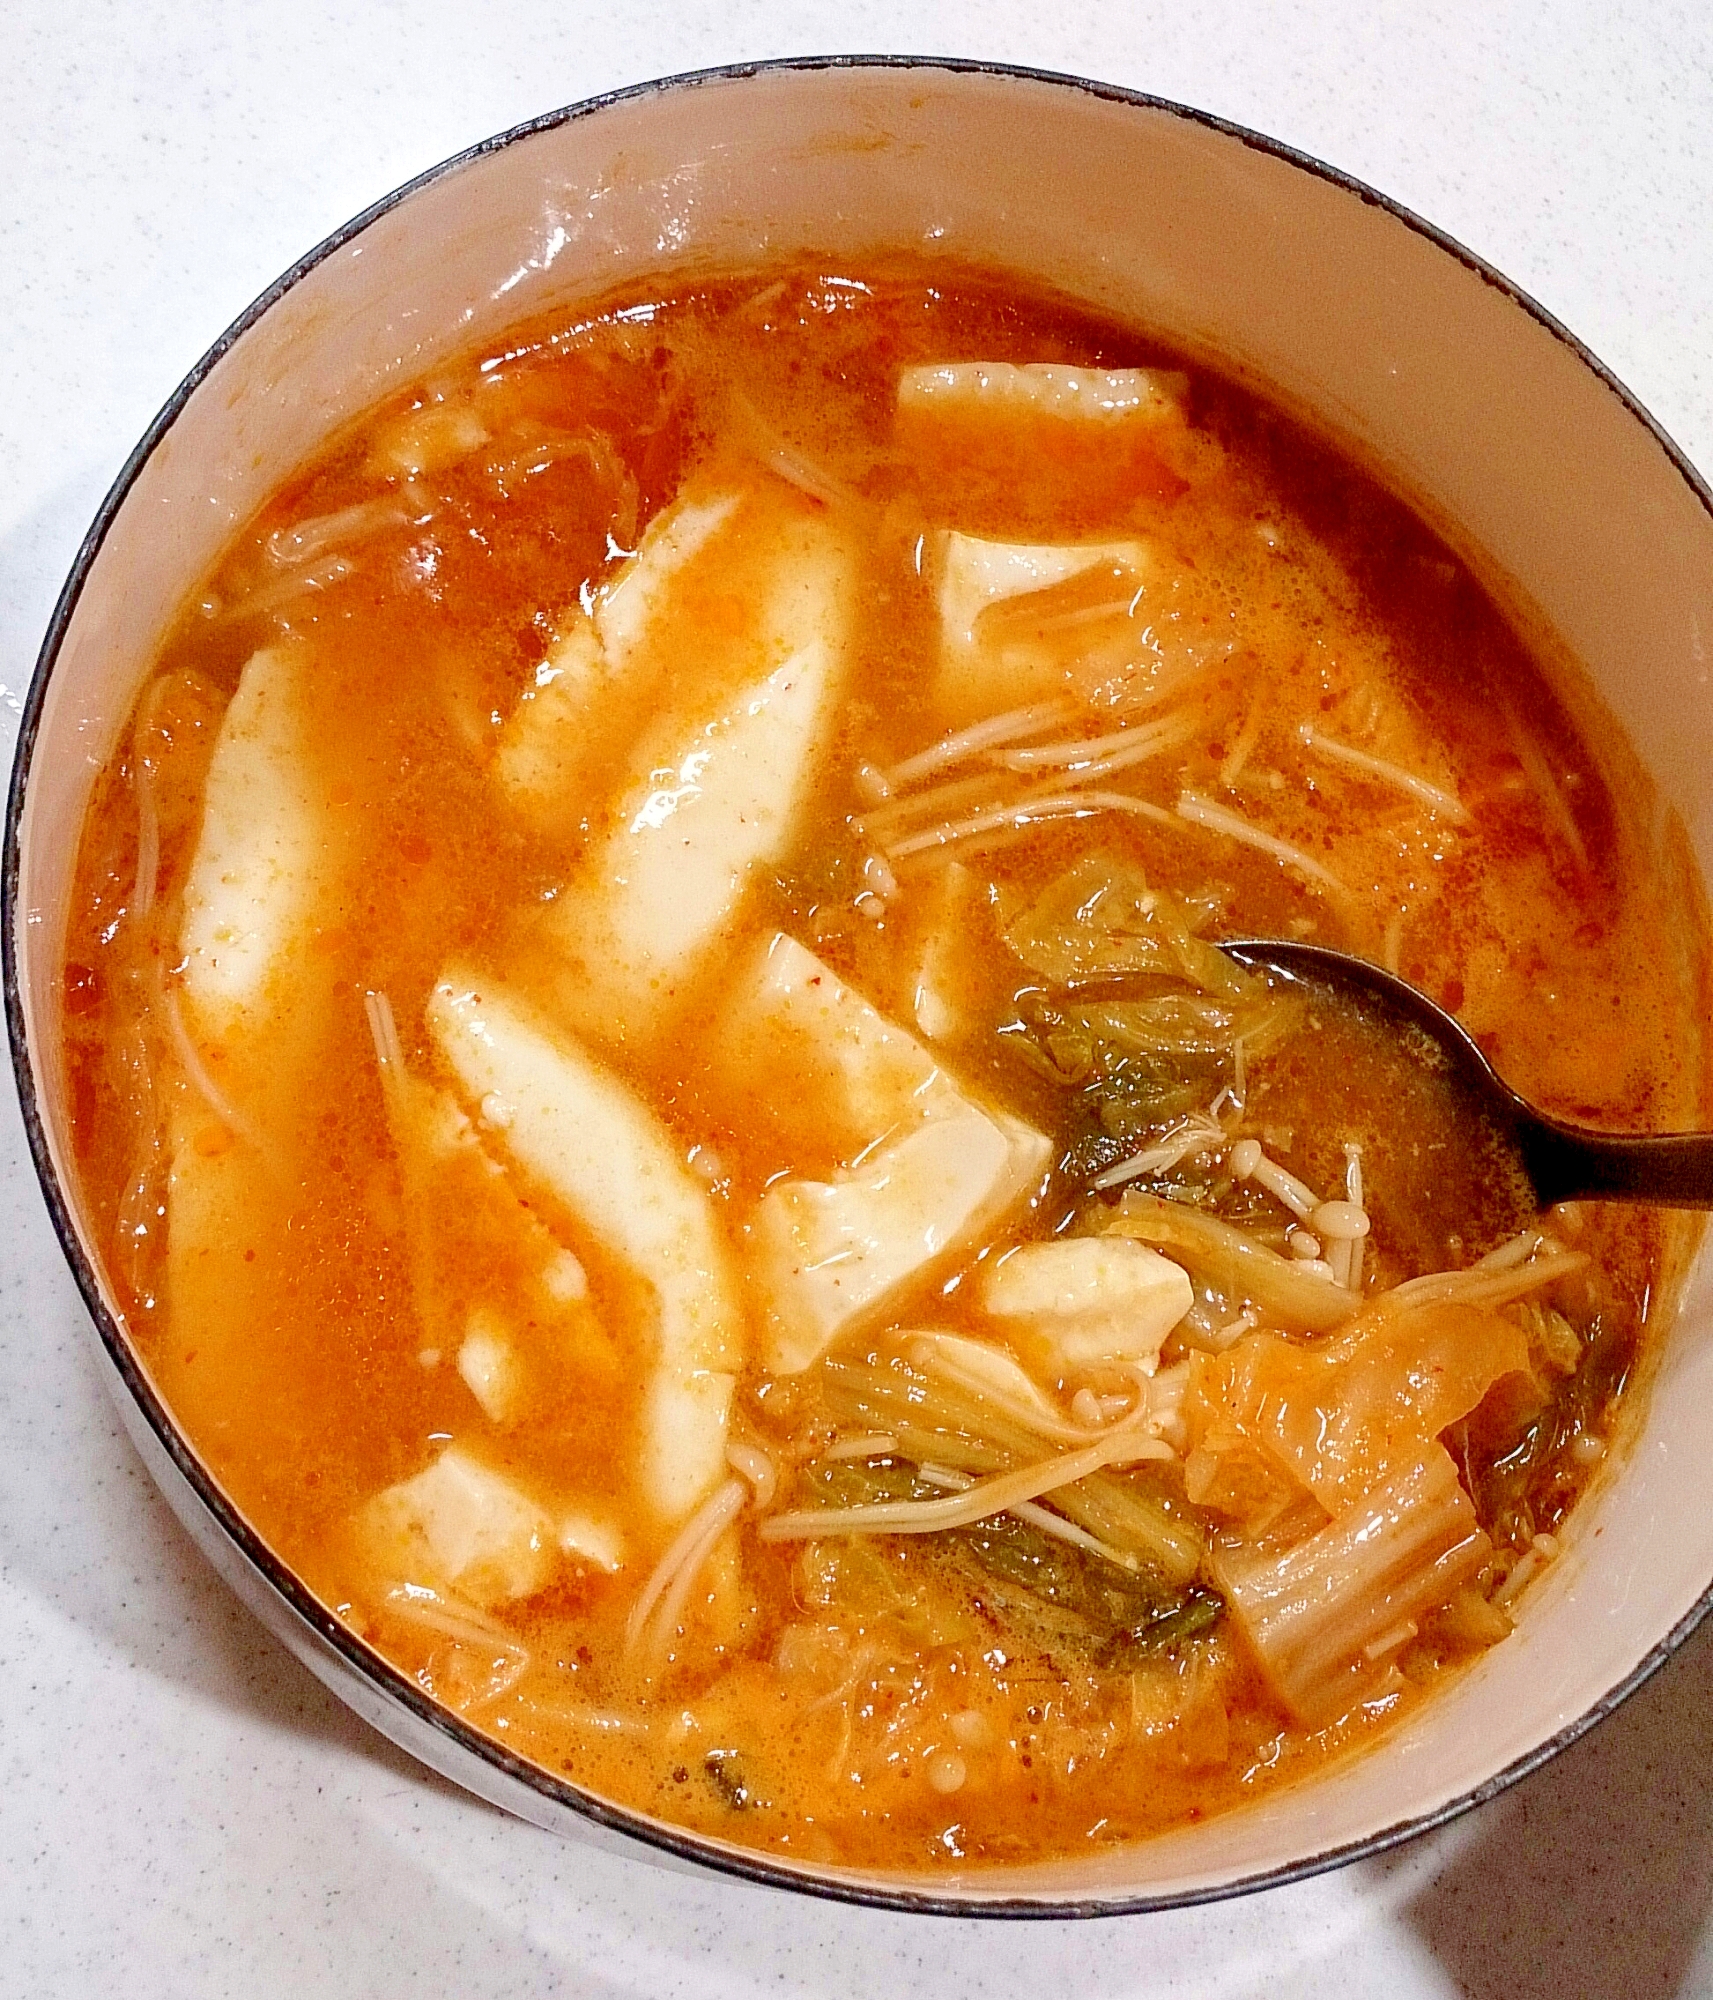 キムチ鍋つゆの素で絹ごし豆腐のスープ